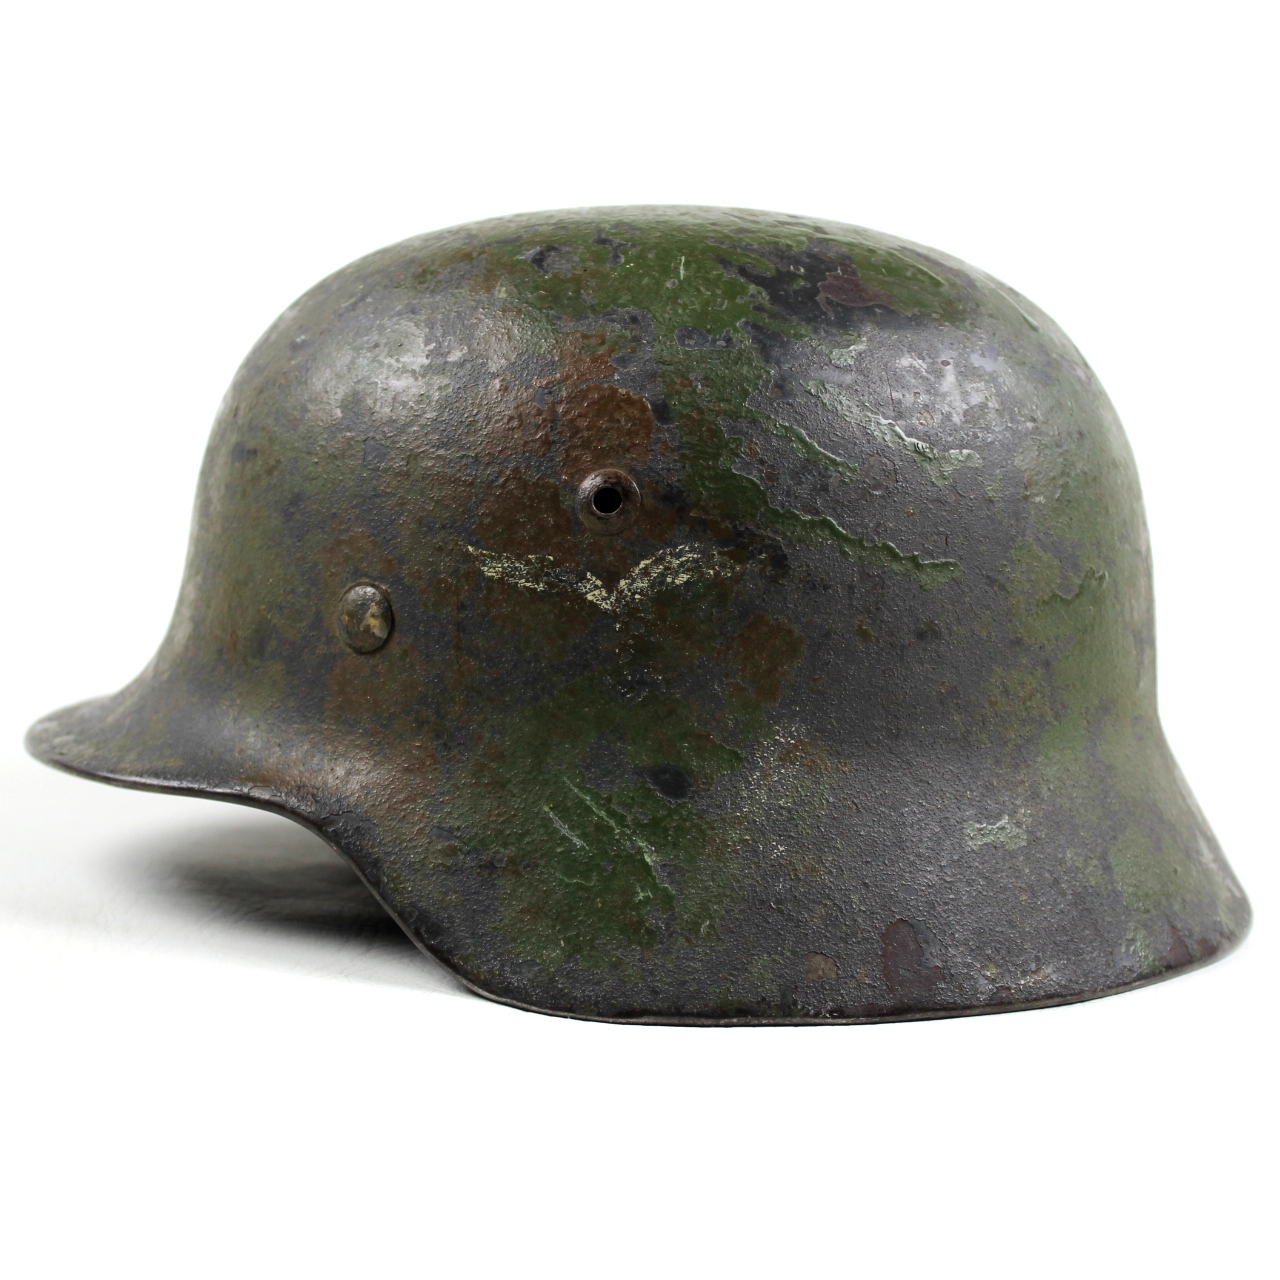 M1940 luftwaffe DD camouflaged helmet